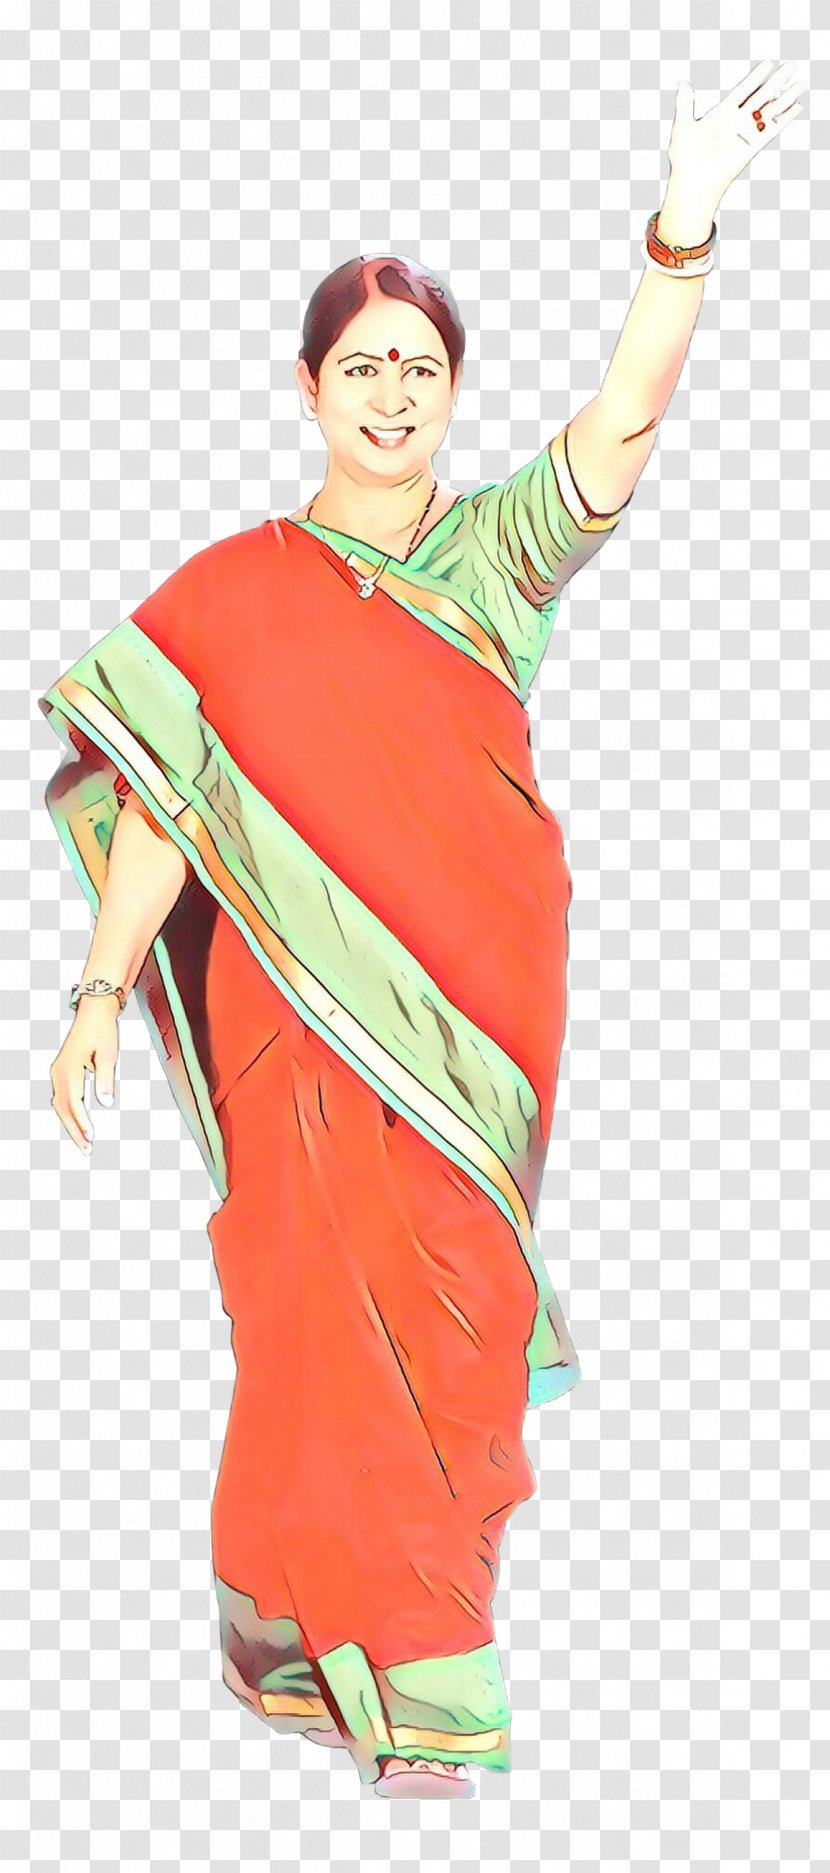 Background Orange - Sari Transparent PNG